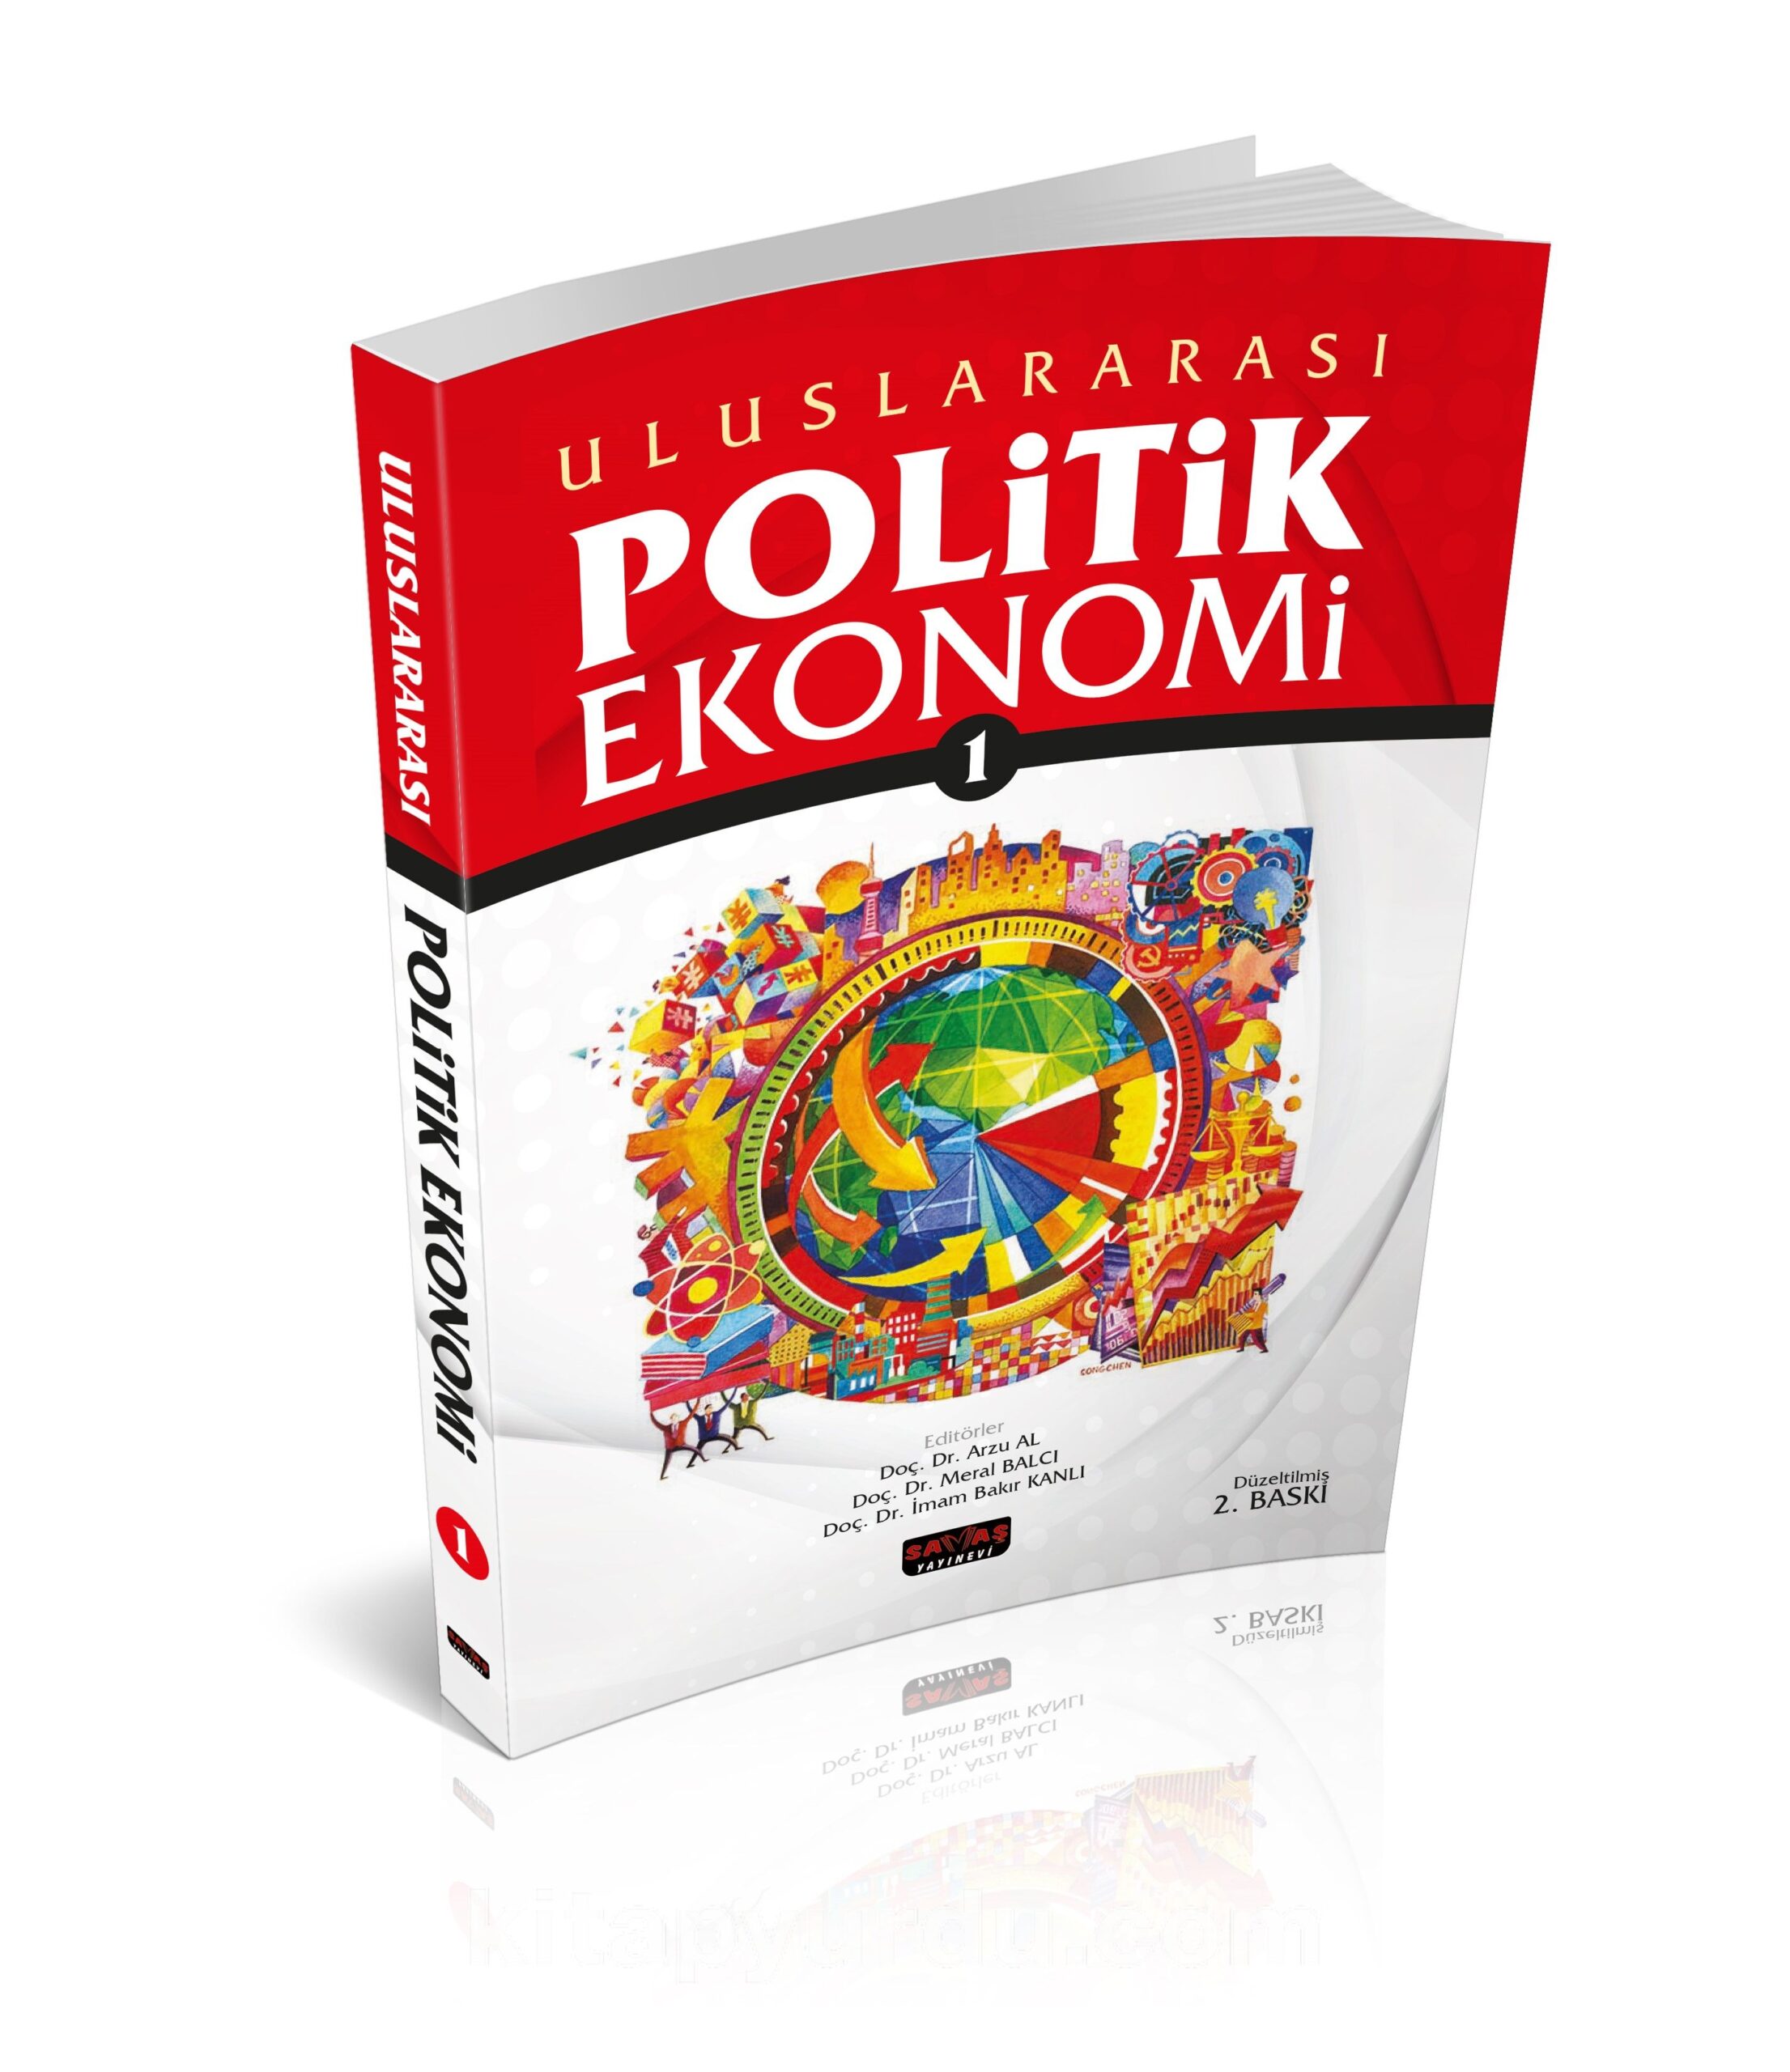 Uluslararası Politik Ekonomi 1